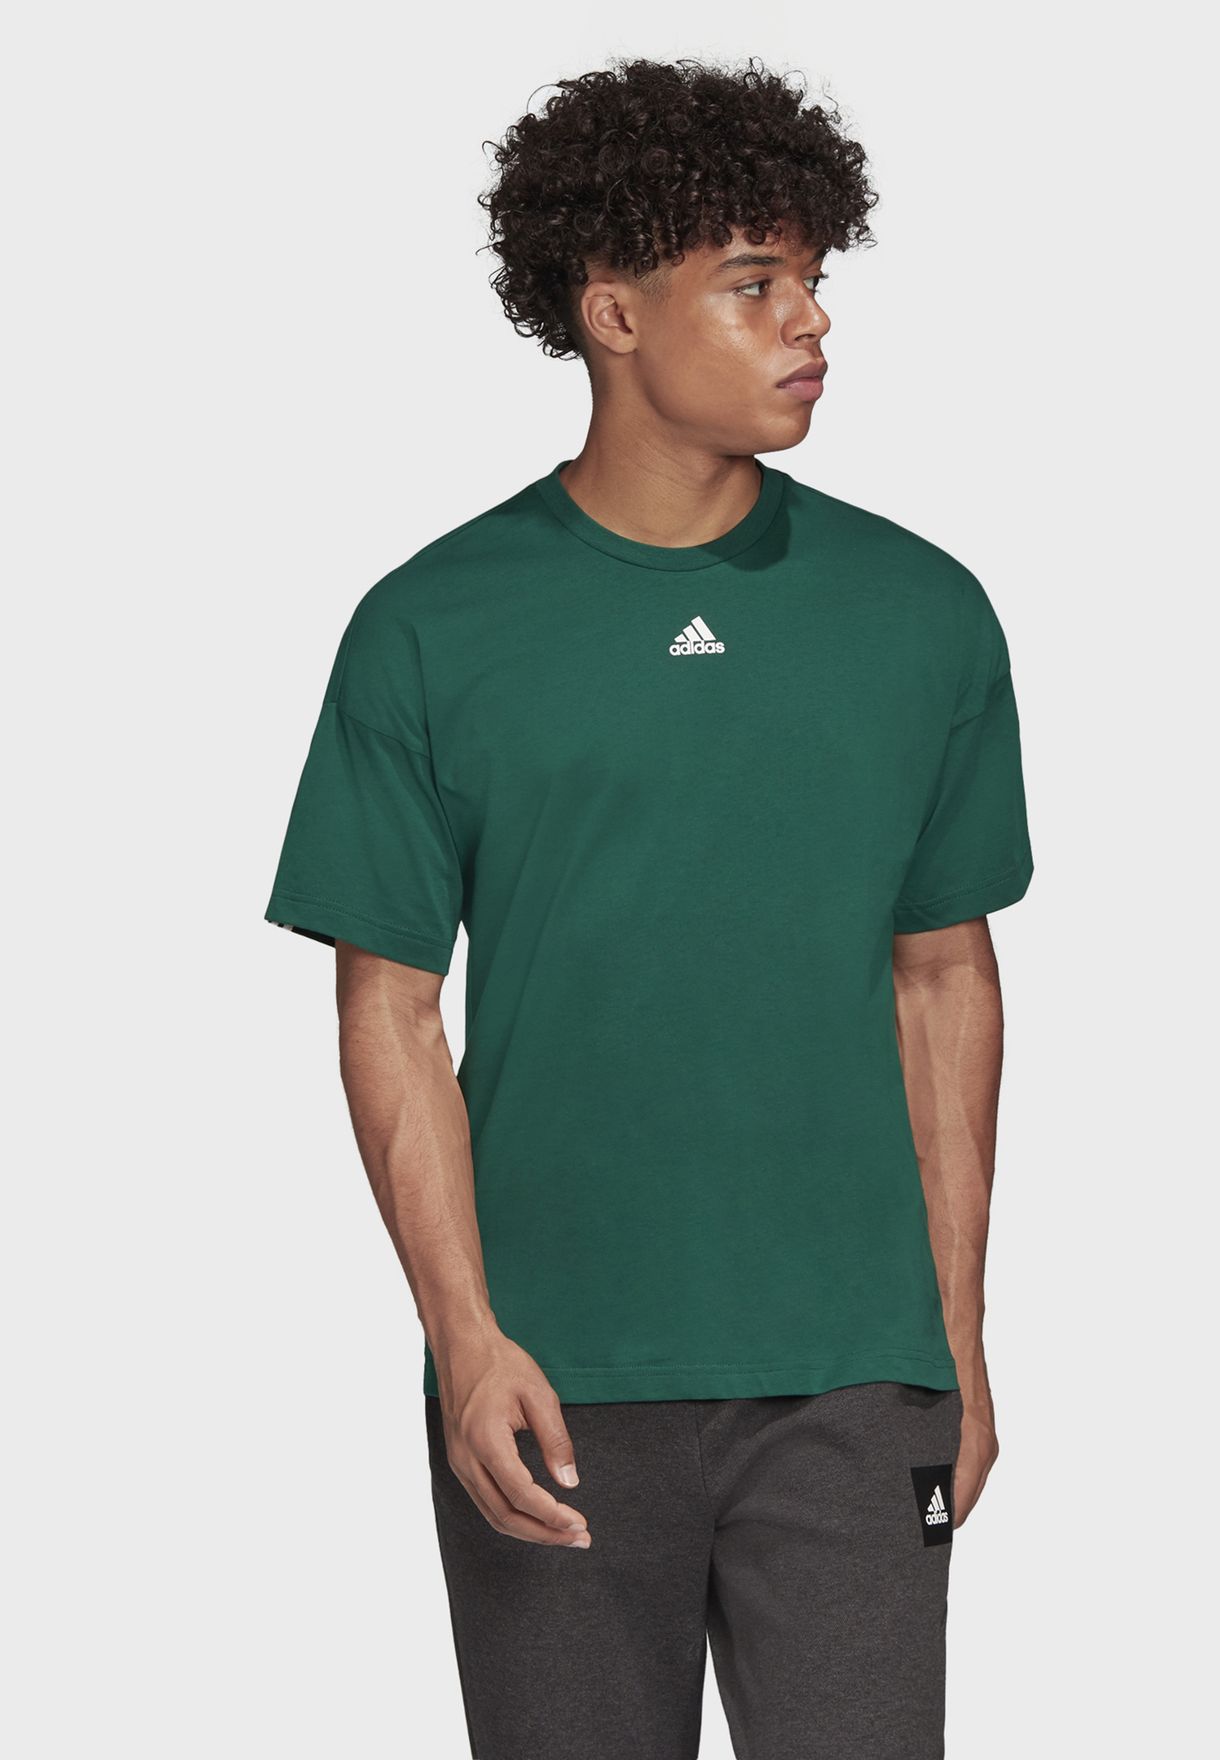 adidas green t shirt mens